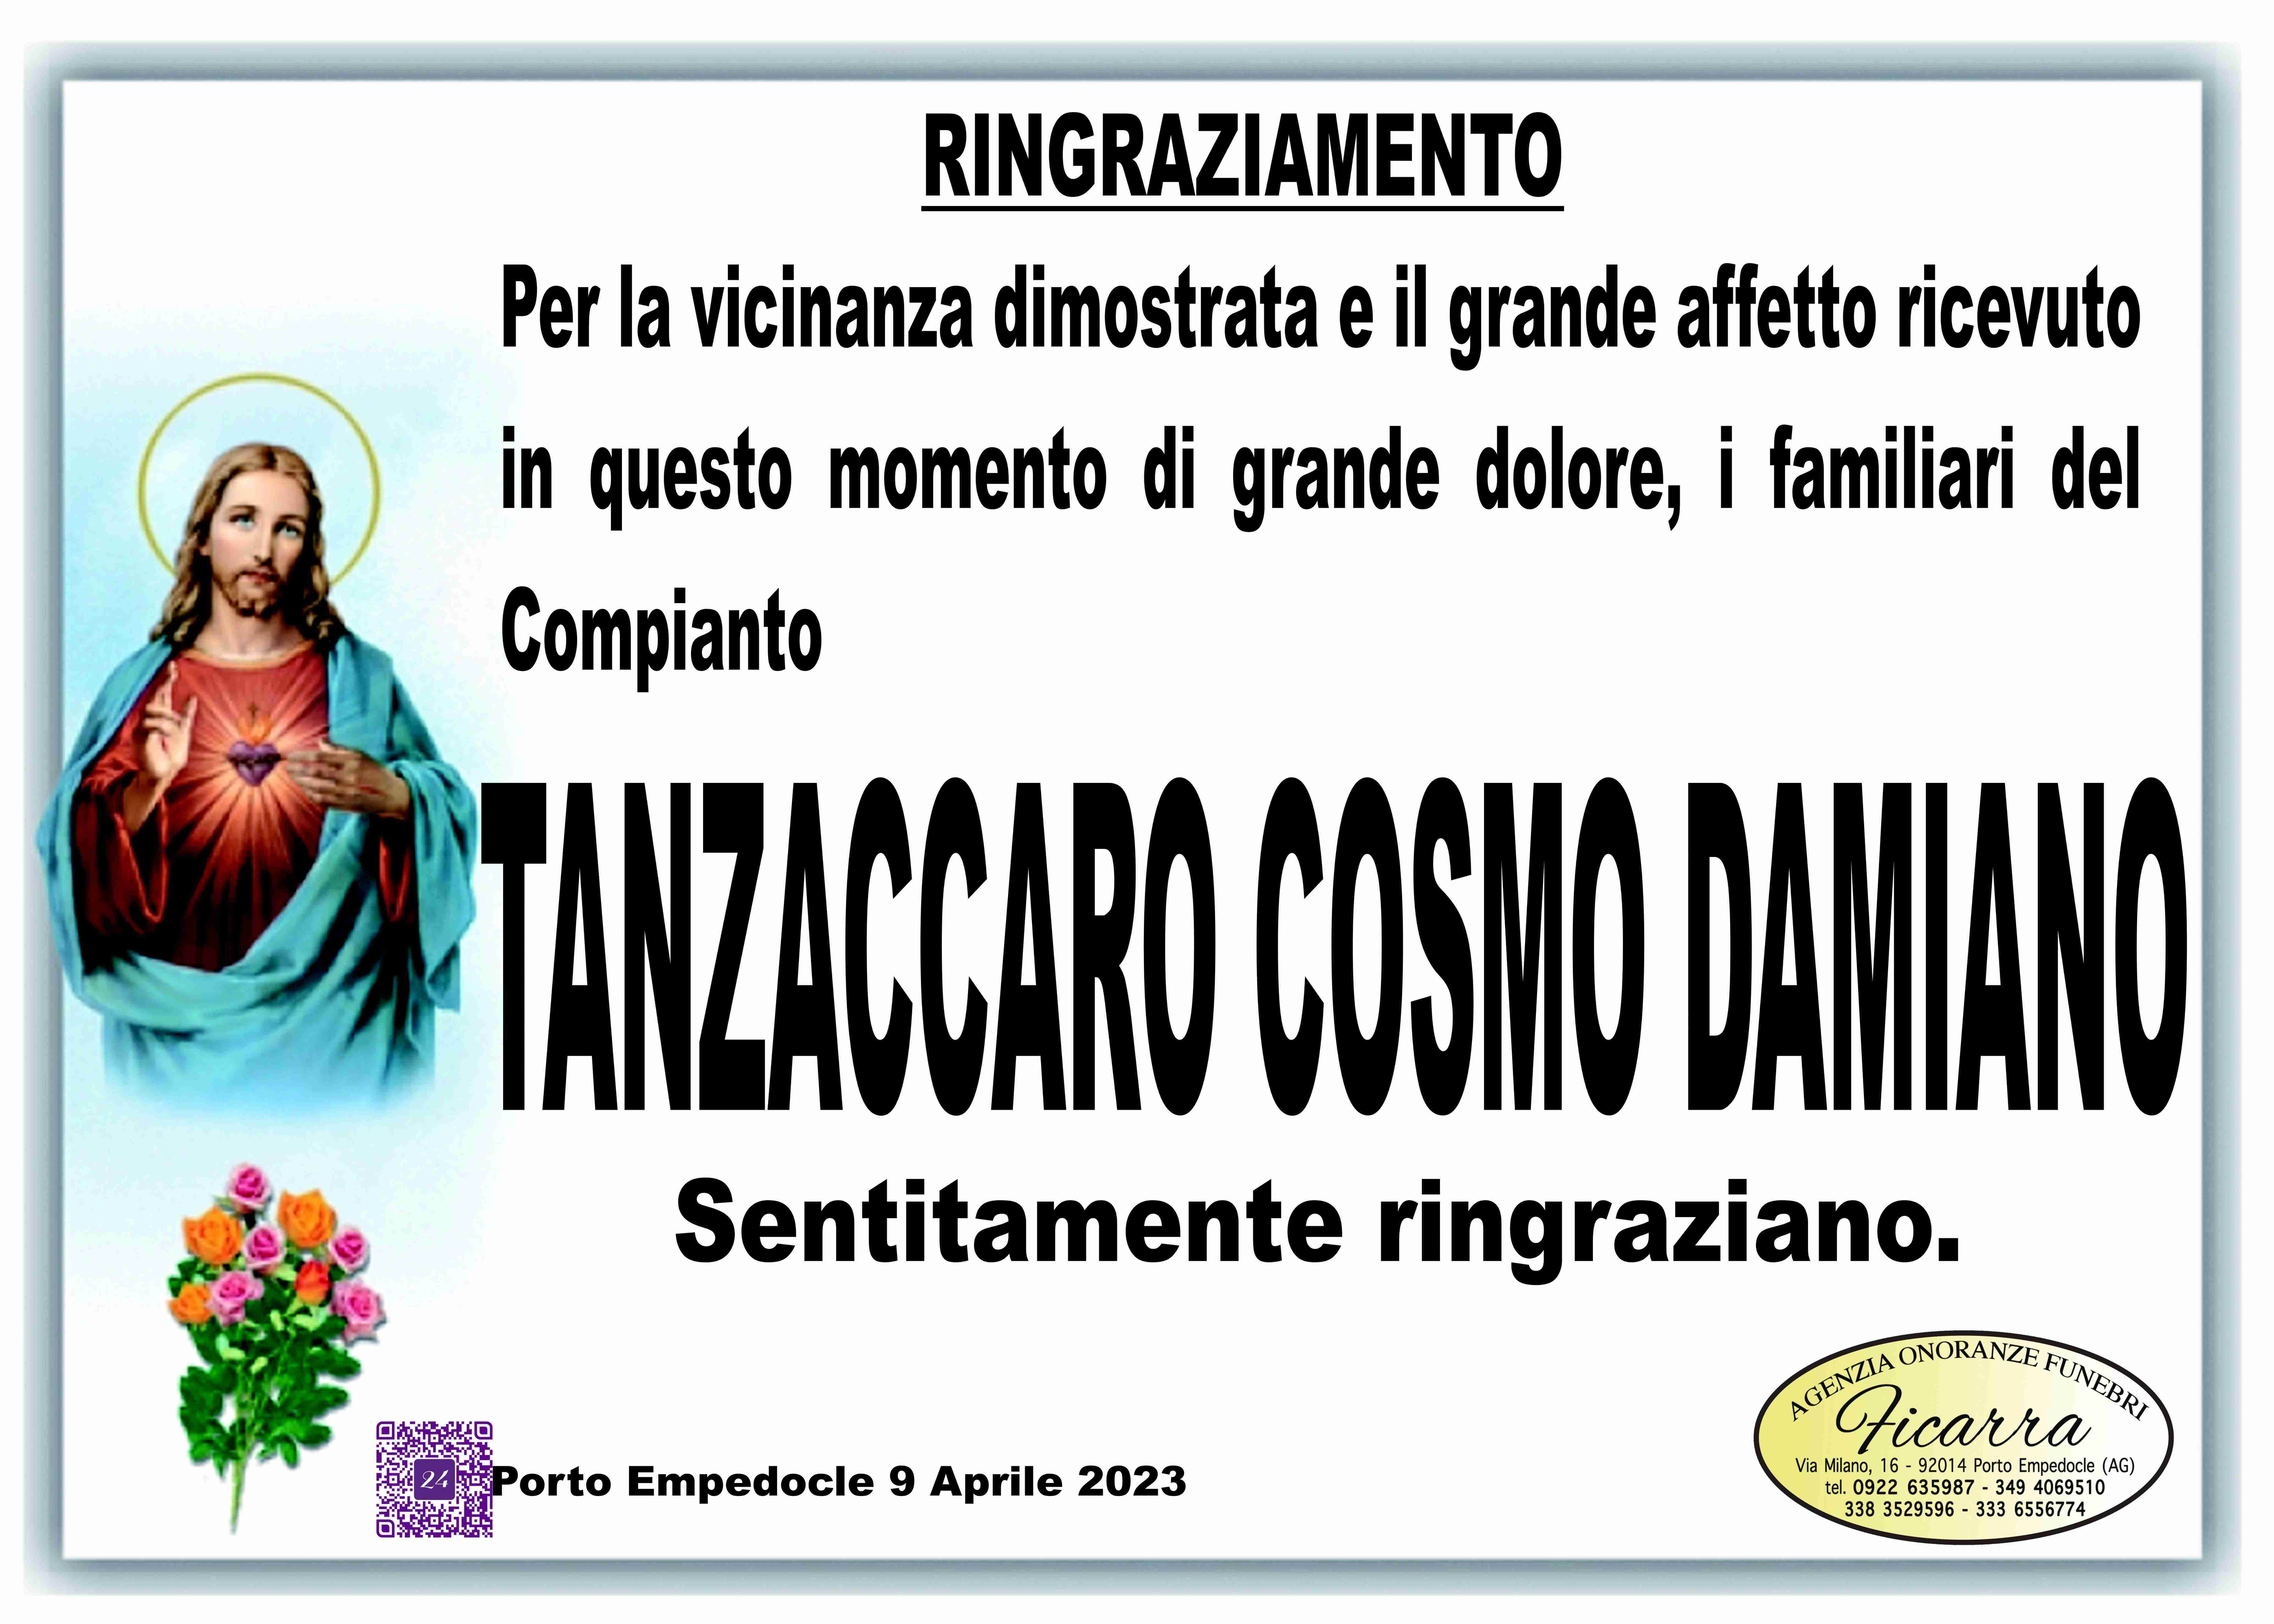 Cosmo Damiano Tanzaccaro